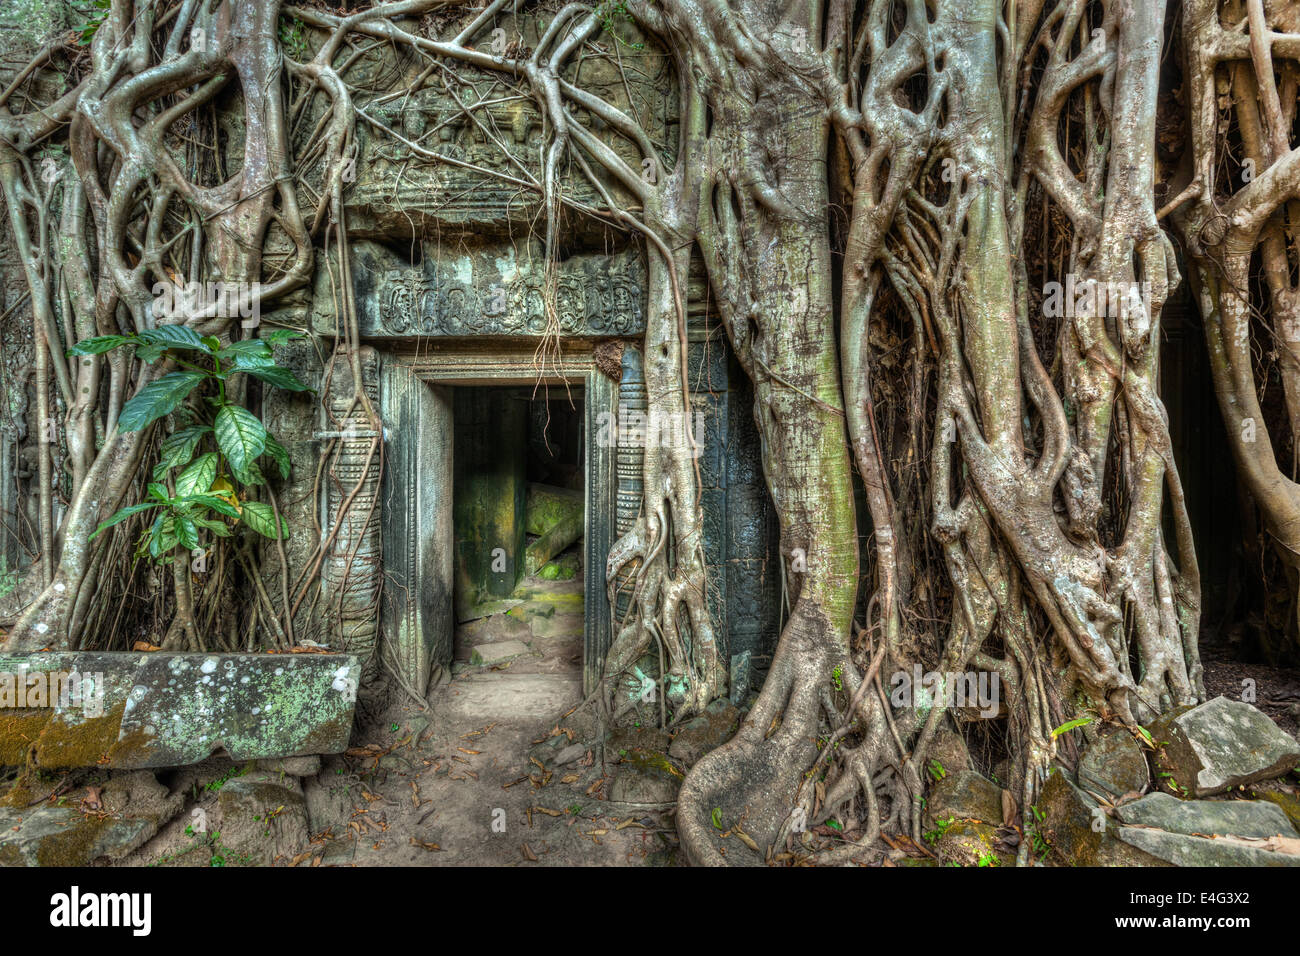 Reisen Sie Kambodscha Konzept Hintergrund - alte steinerne Tür und Baumwurzeln, Tempelruinen Ta Prohm, Angkor, Kambodscha Stockfoto